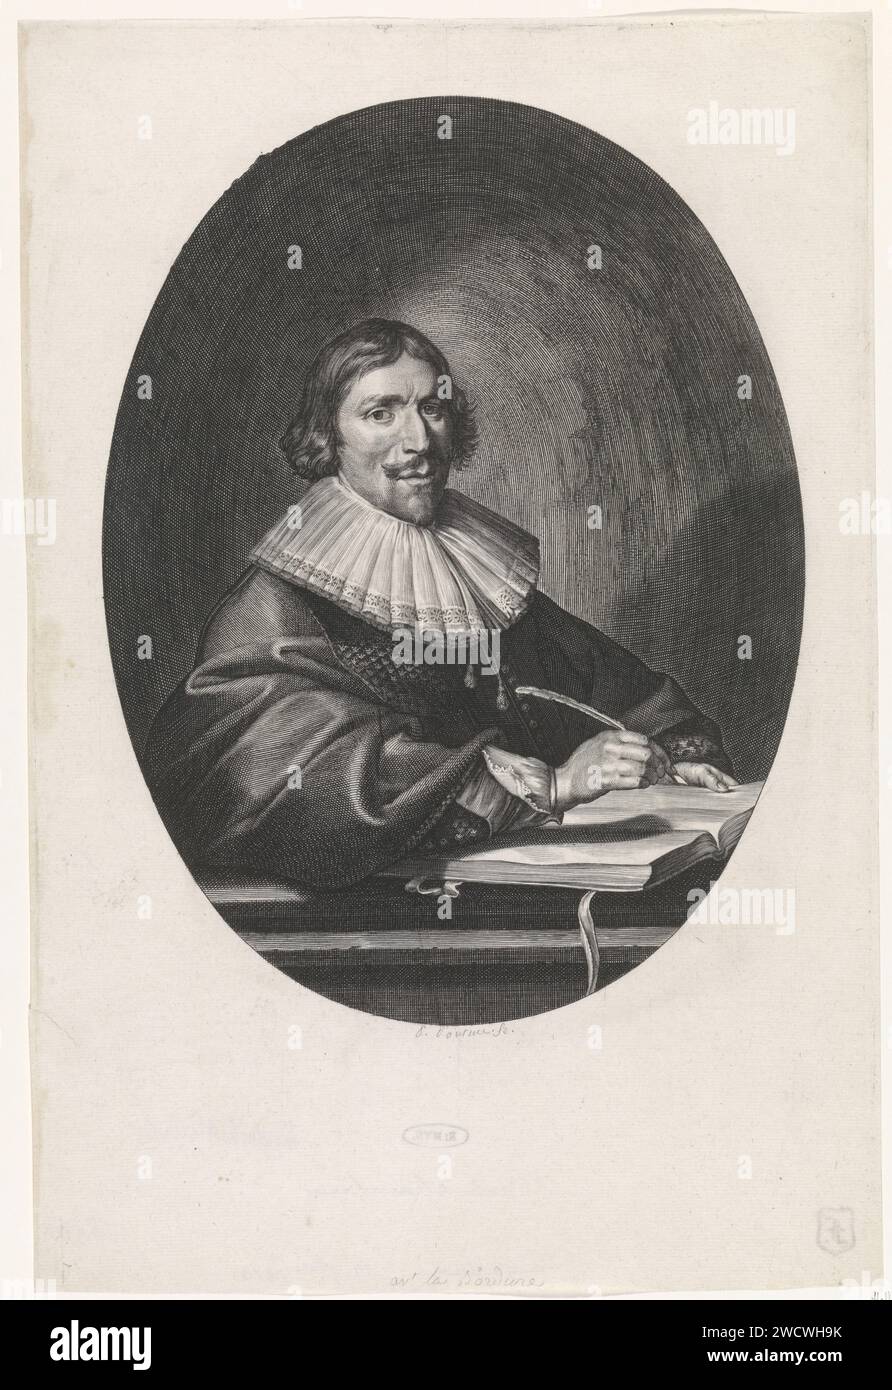 Porträt von Hendrik Meurs, Paulus Pontius, nach Pieter Codde, 1639er Druck Antwerpener Papierstich Stockfoto